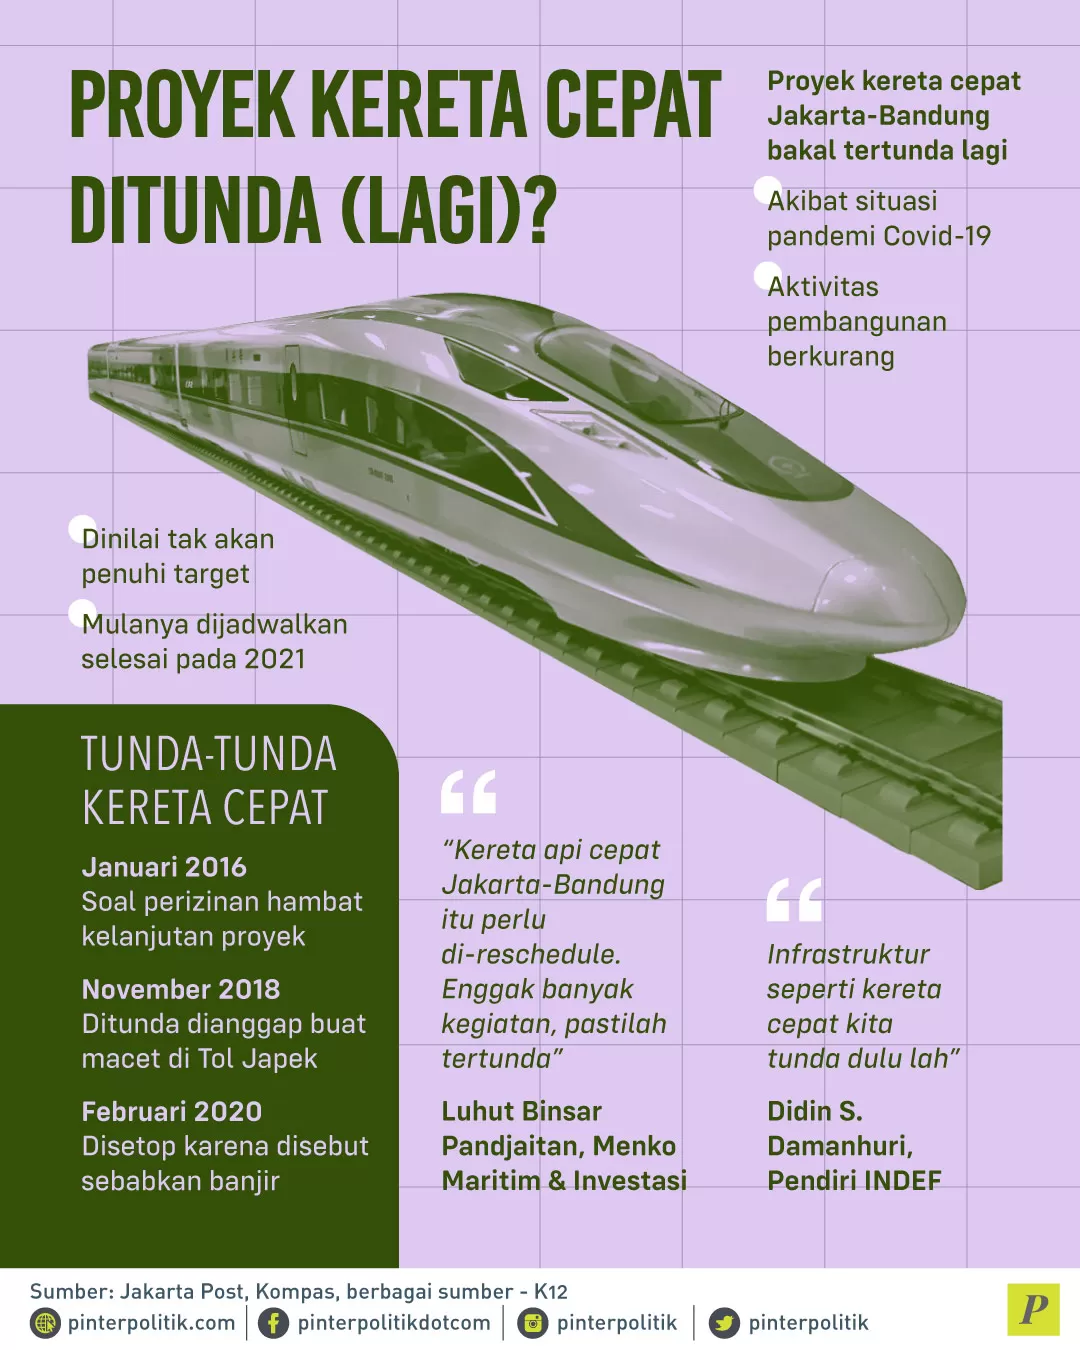 Proyek kereta cepat Jakarta Bandung